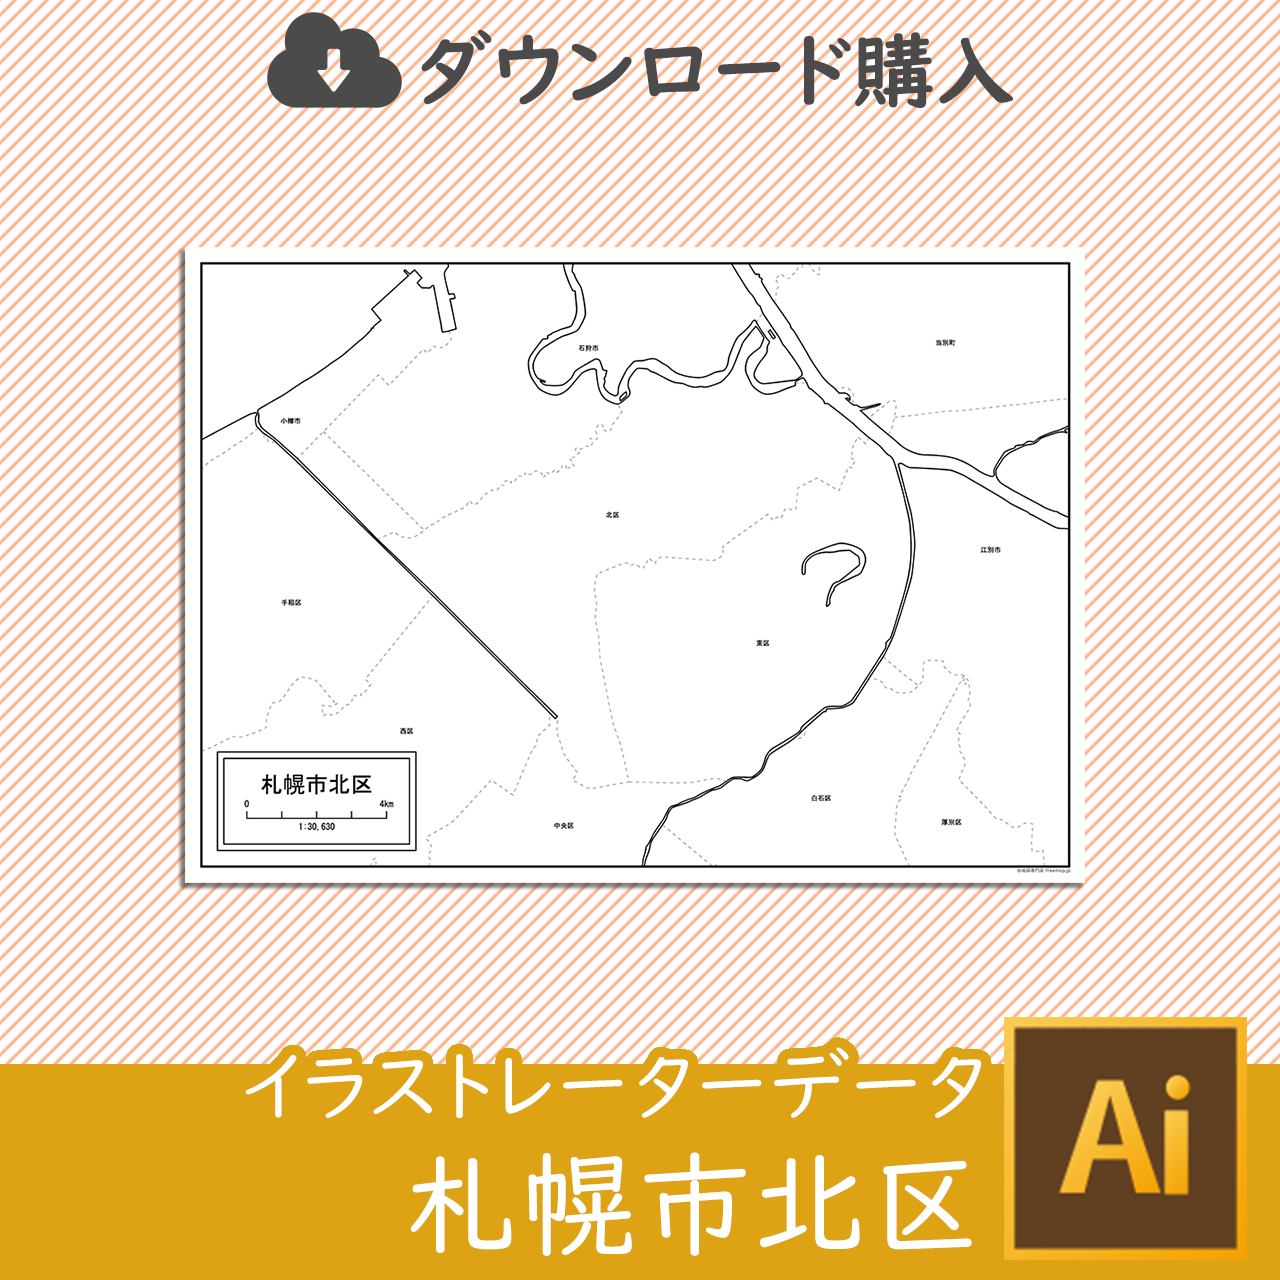 札幌市北区のaiデータのサムネイル画像